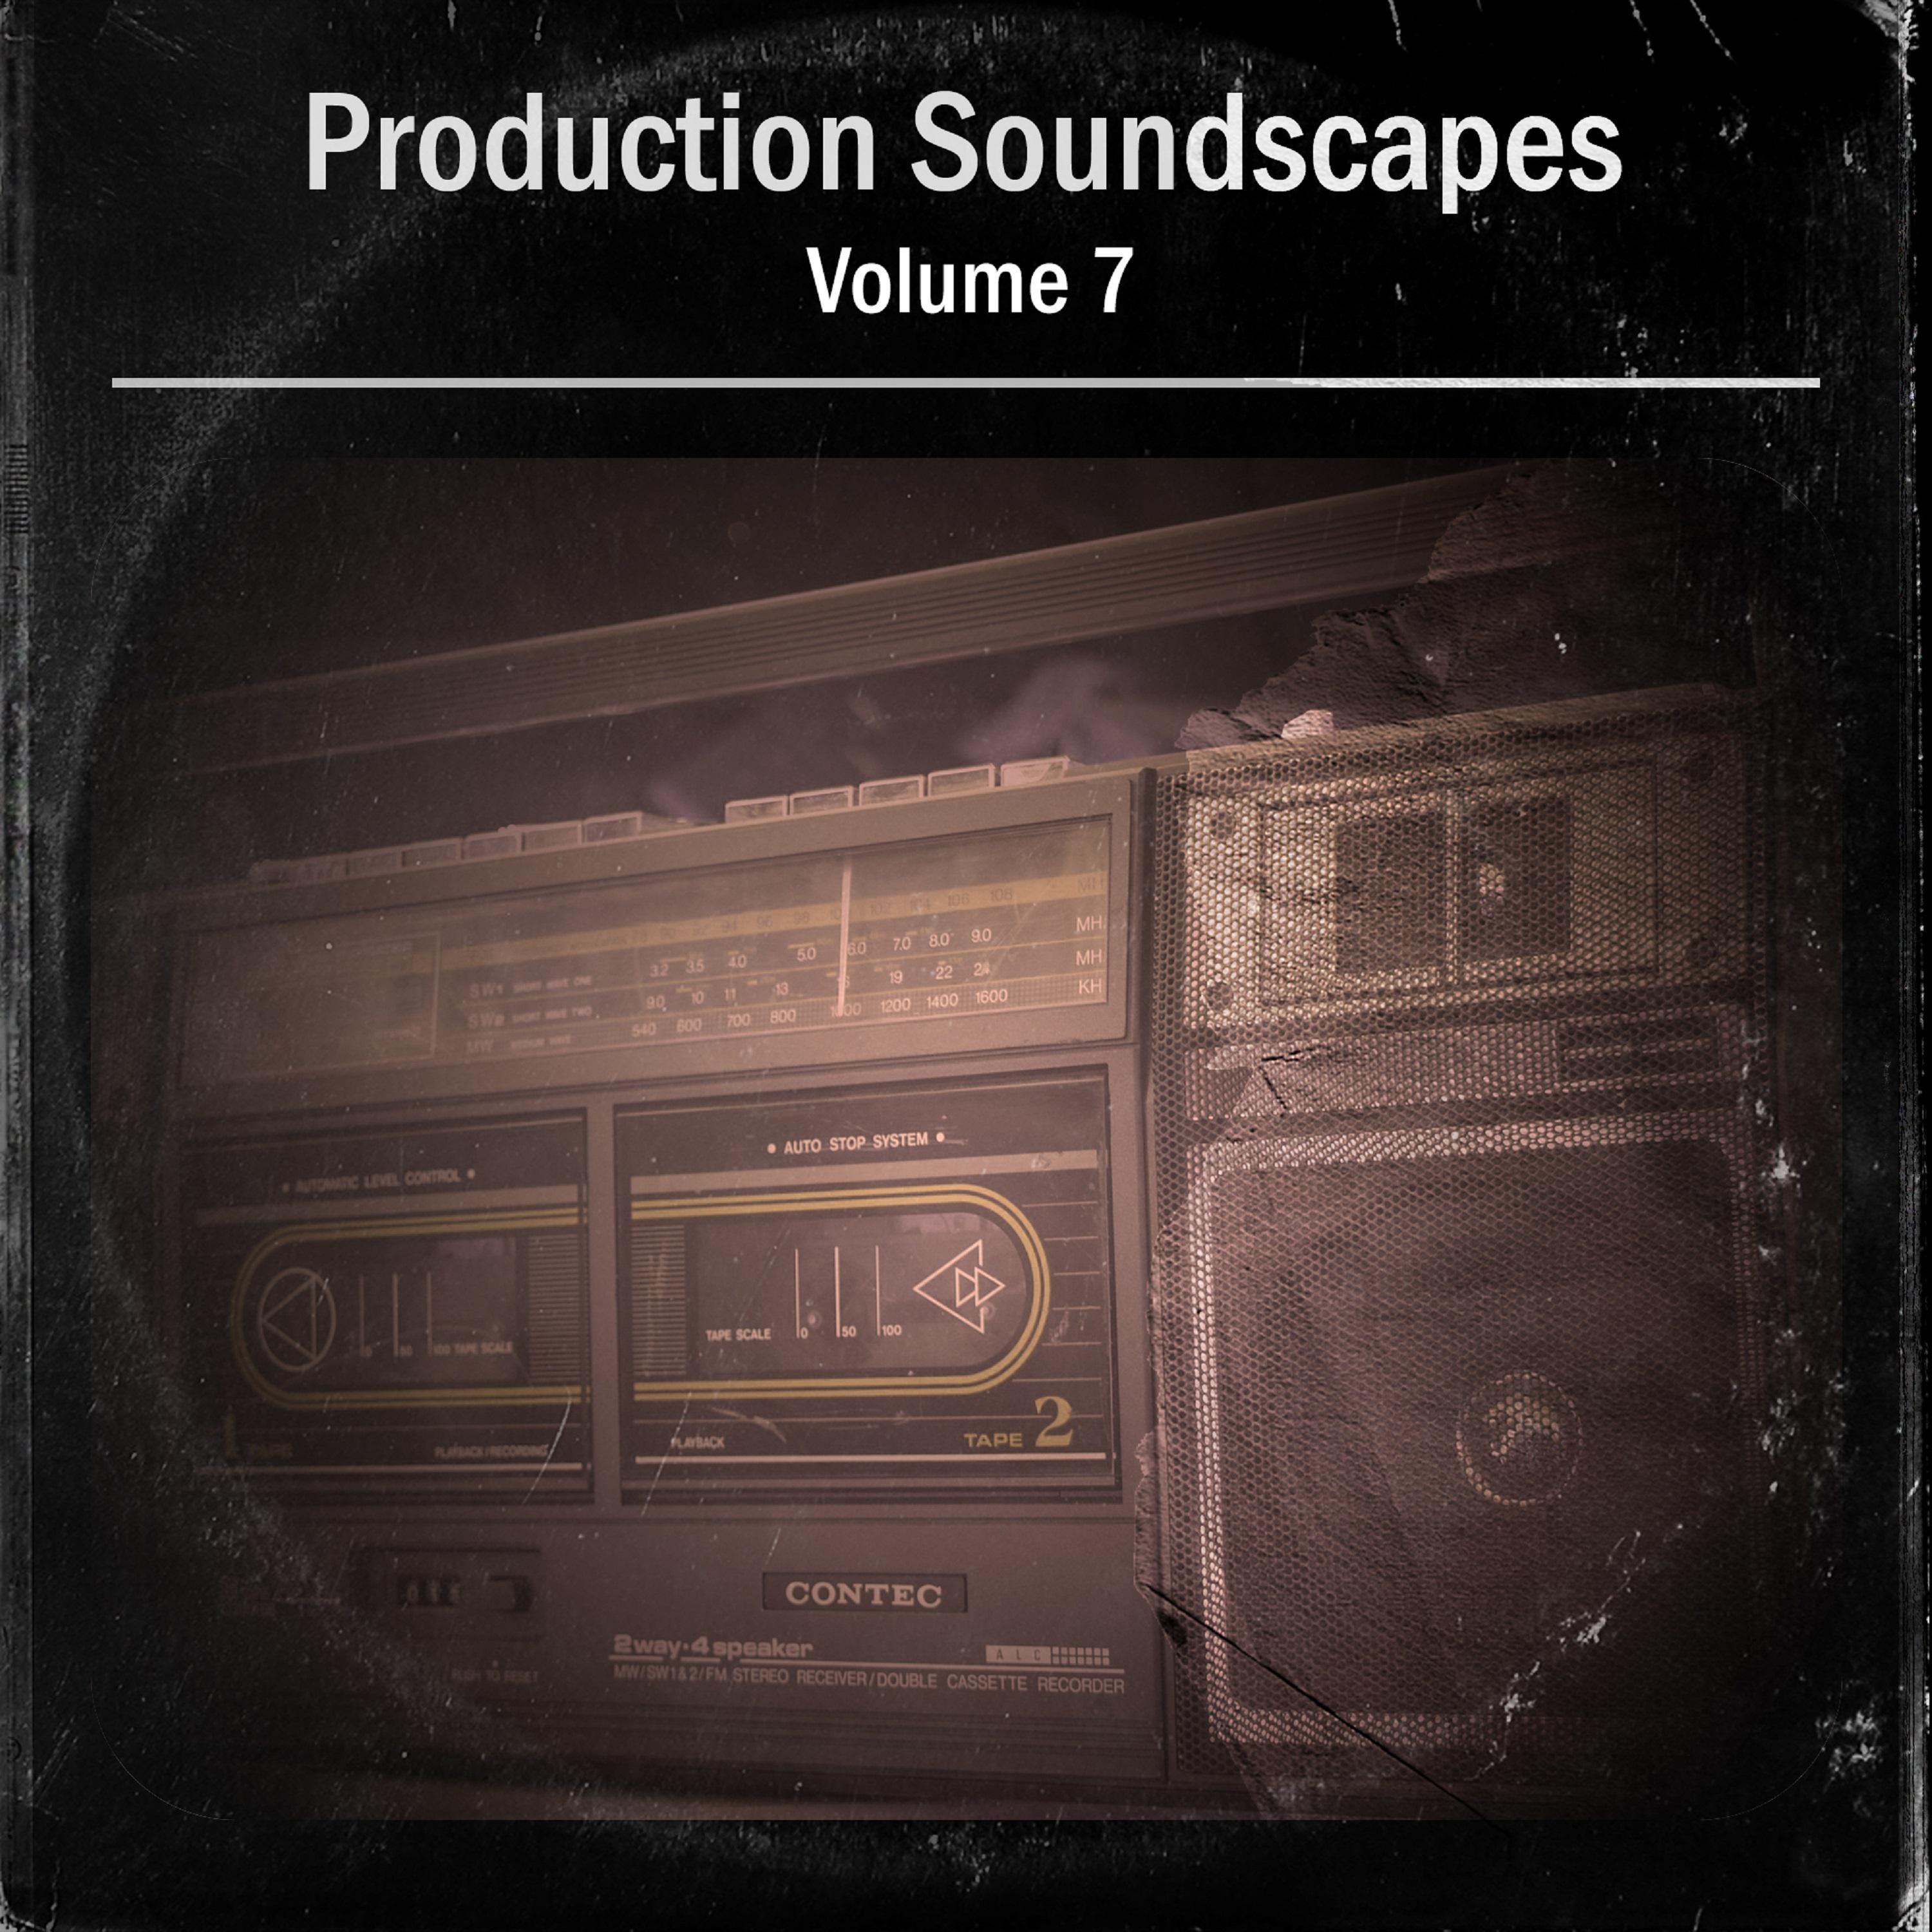 Prouduction Soundscapes Vol, 7